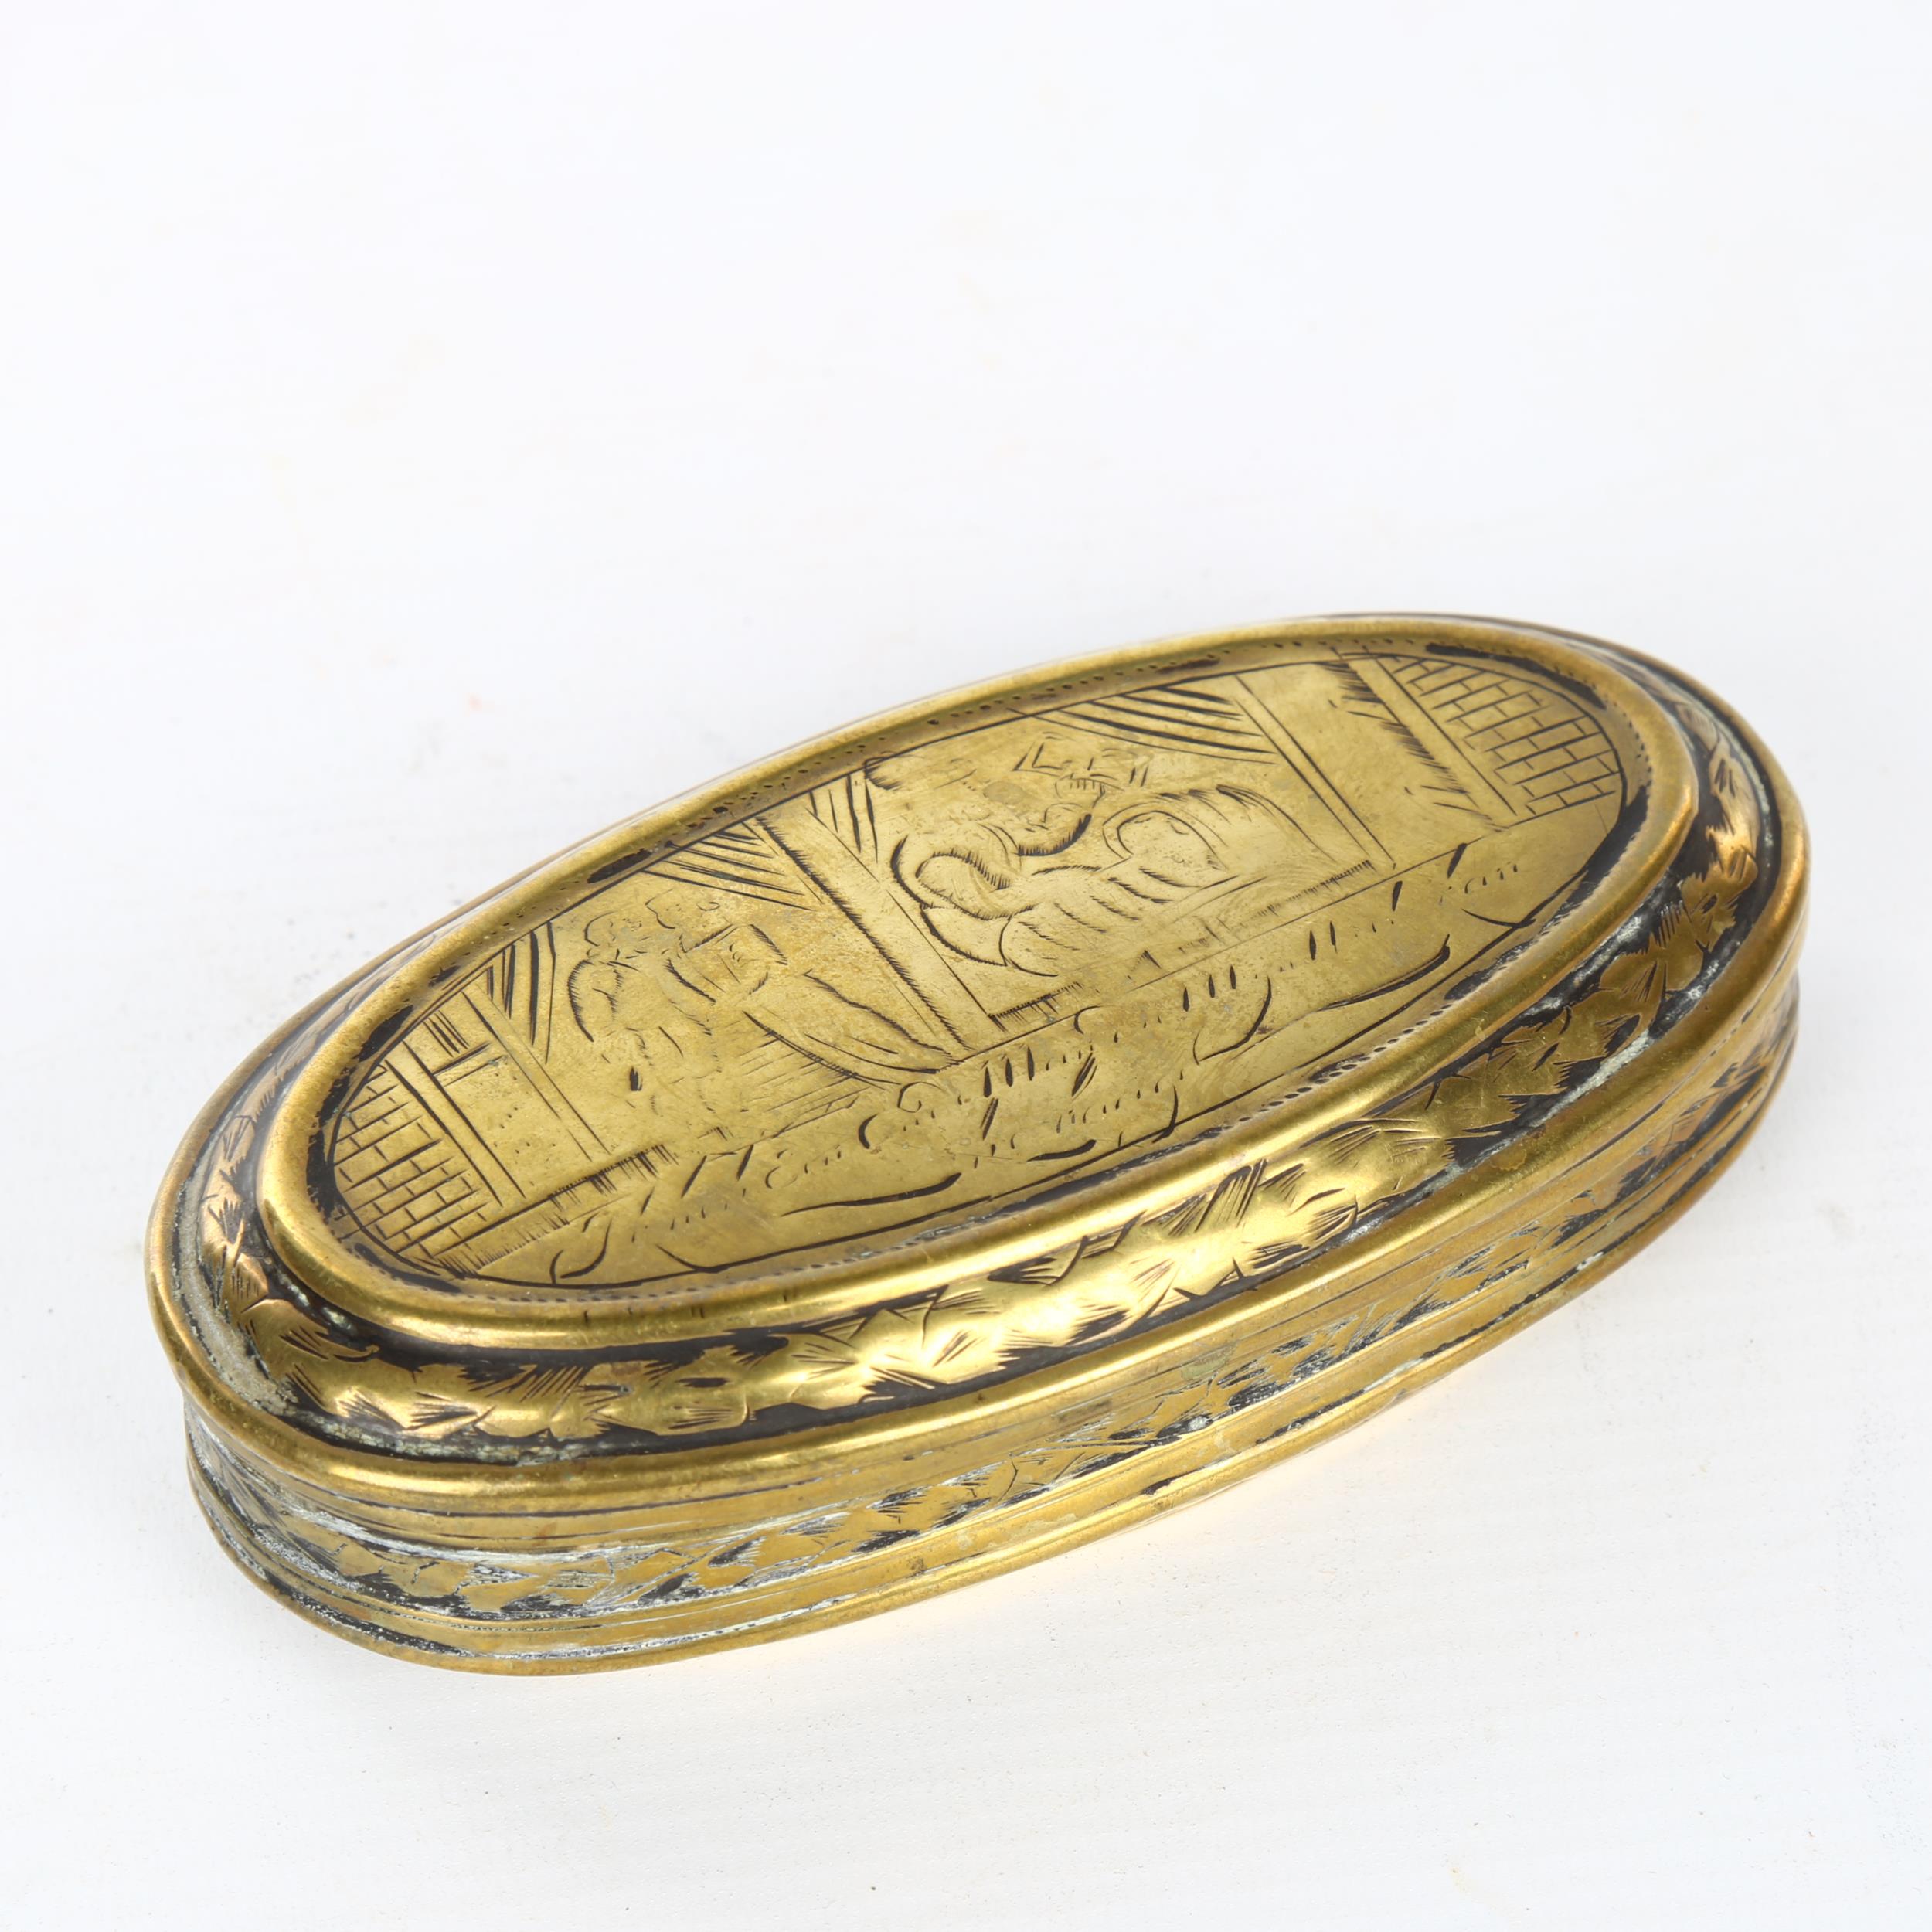 An 18th century Dutch engraved brass tobacco box, length 13.5cm Hinge has an old repair,